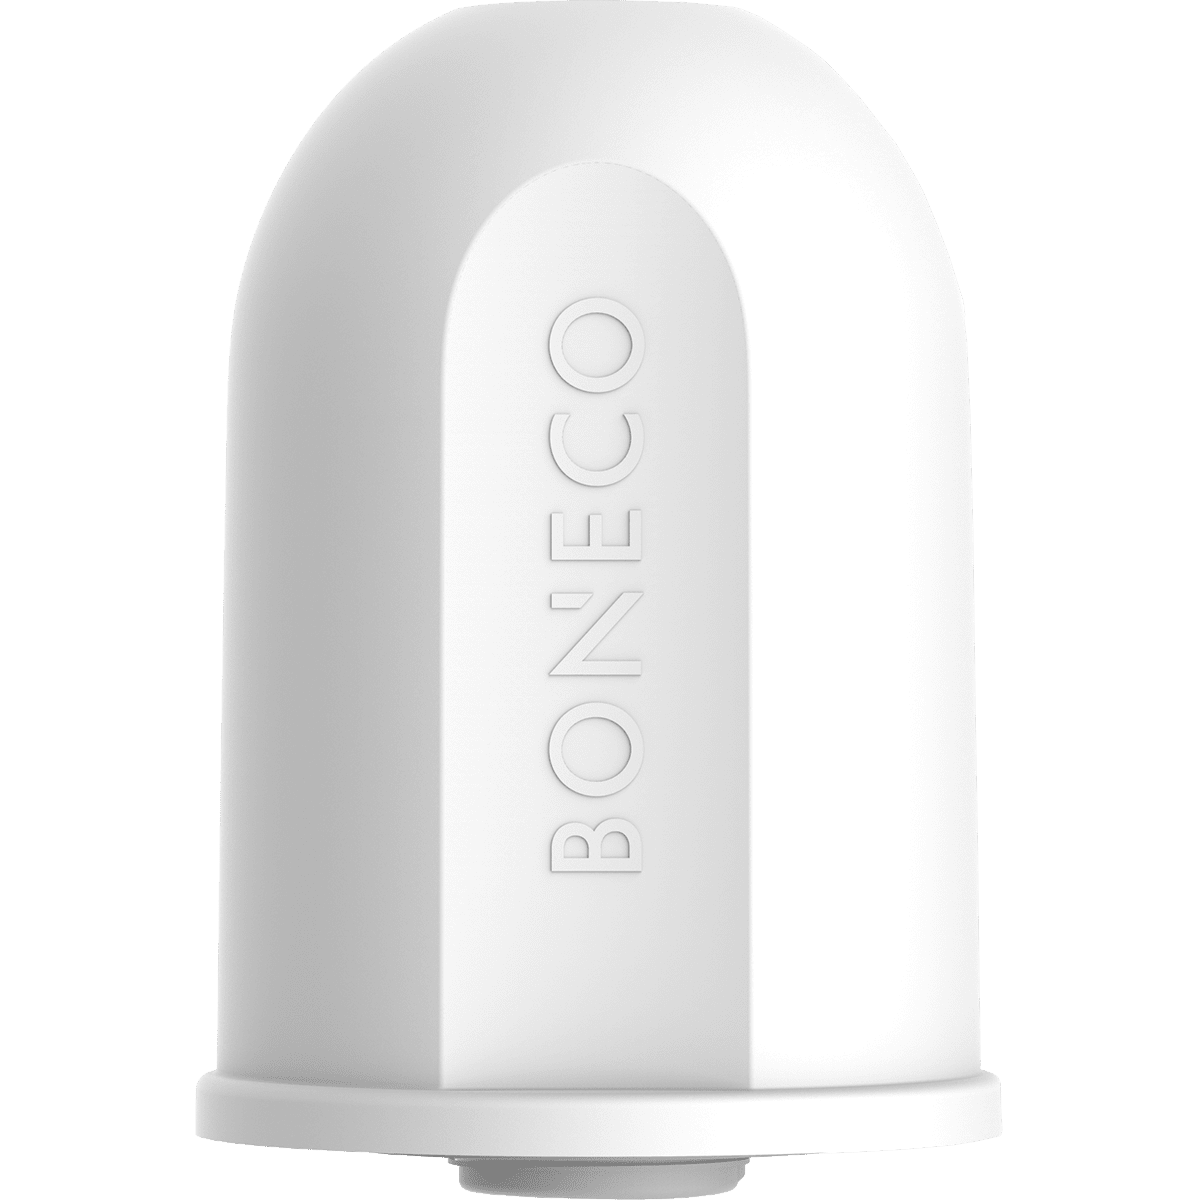 Boneco A250 Aqua Pro 2-in-1 Water Filter